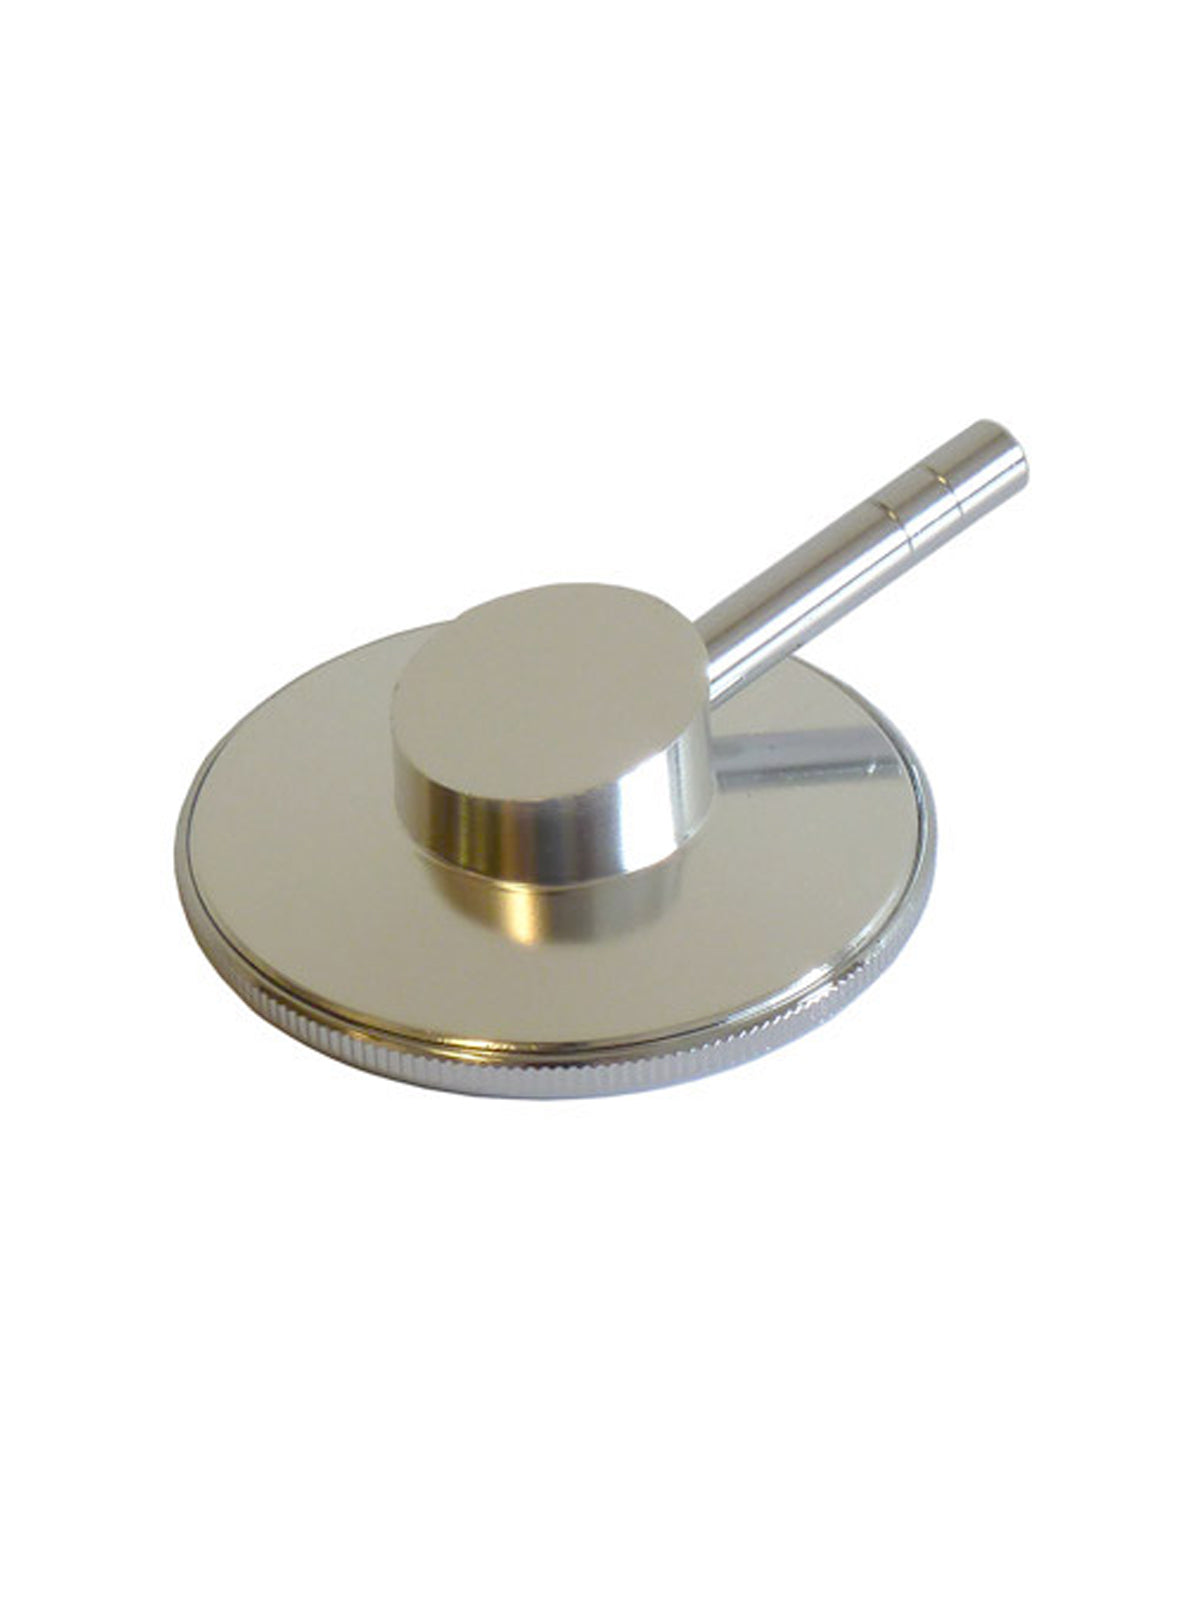 Chestpiece Stethoscope - 106CP - Standard